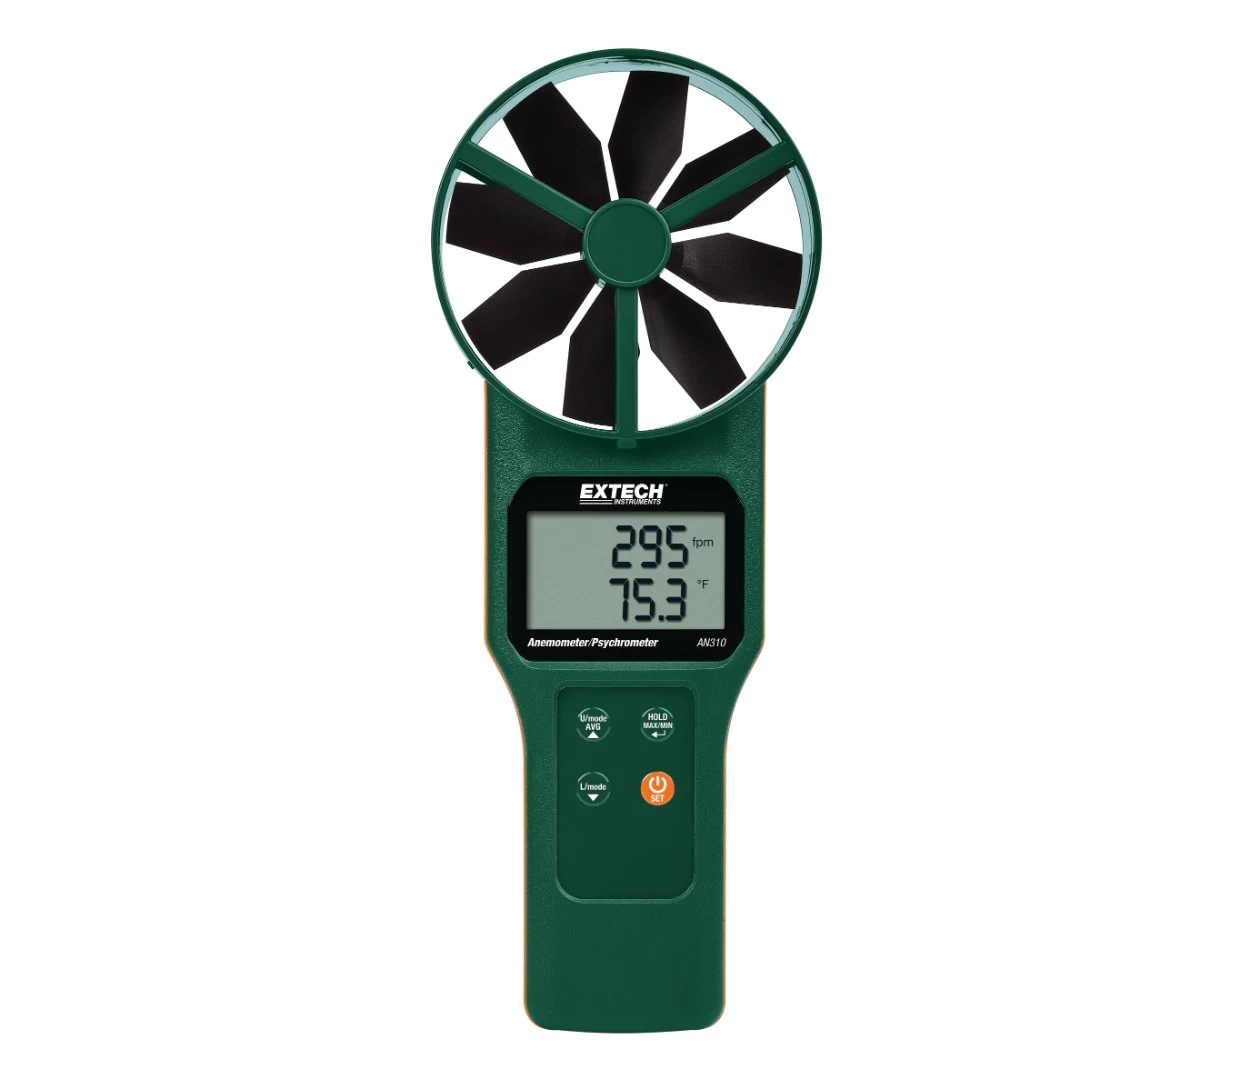 Extech AN310 - Термо/Гигро/Анемометр, измеритель точки росы и температуры по мокрому термометру - 1